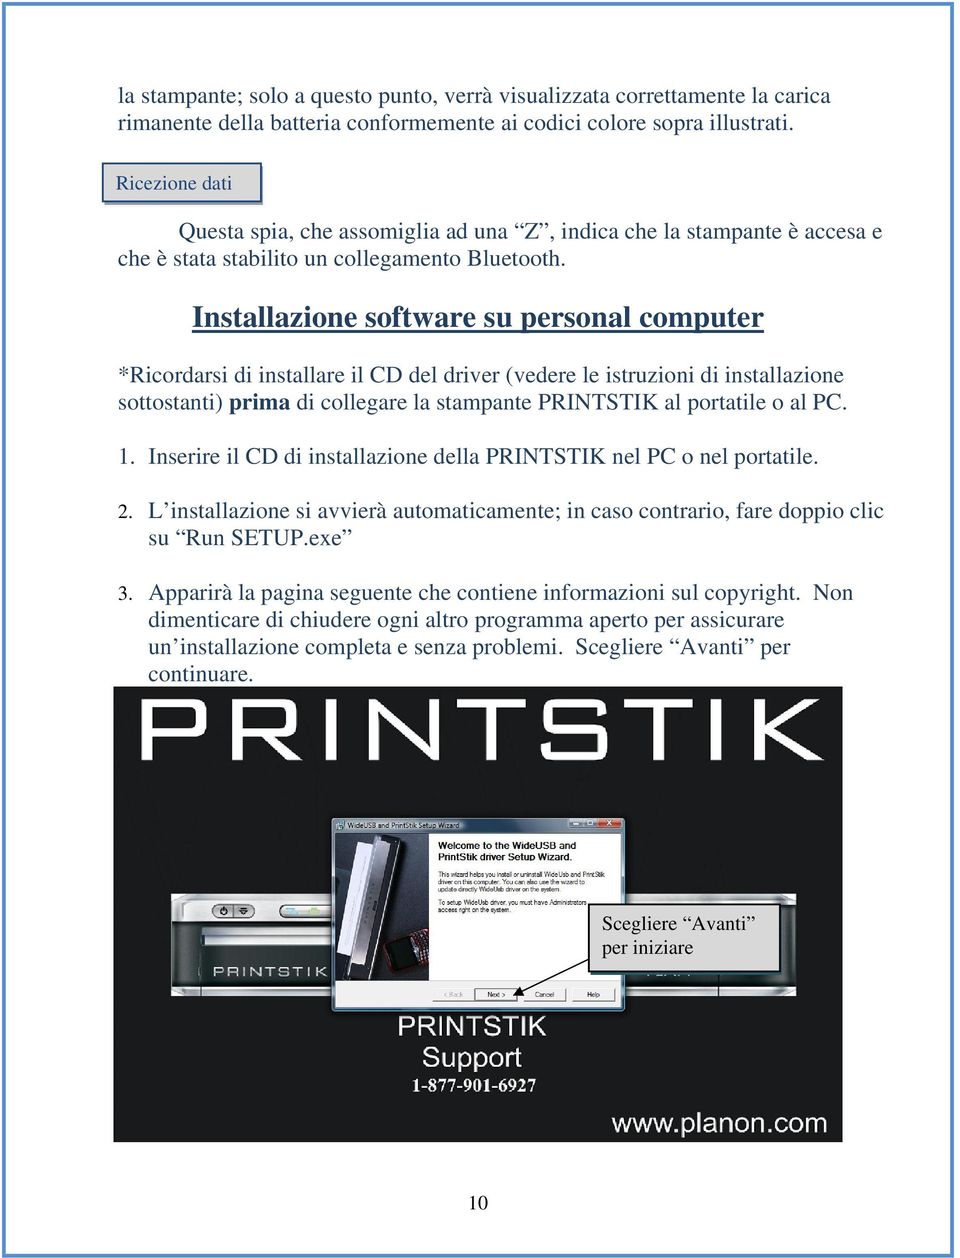 Installazione software su personal computer *Ricordarsi di installare il CD del driver (vedere le istruzioni di installazione sottostanti) prima di collegare la stampante PRINTSTIK al portatile o al